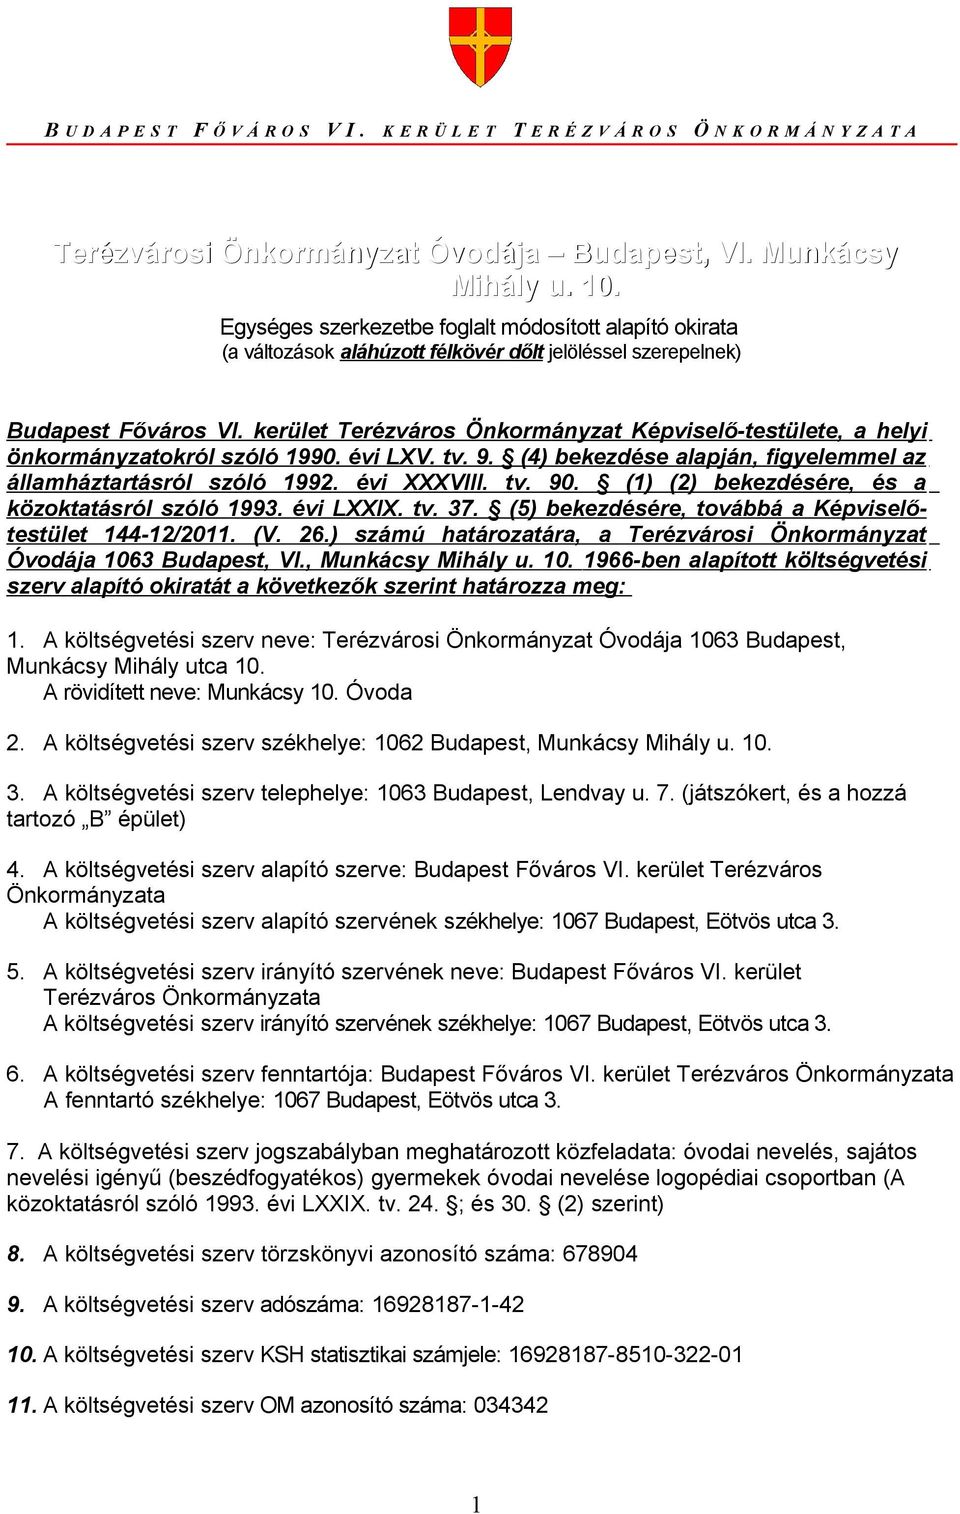 kerület Terézváros Önkormányzat Képviselő-testülete, a helyi önkormányzatokról szóló 1990. évi LXV. tv. 9. (4) bekezdése alapján, figyelemmel az államháztartásról szóló 1992. évi XXXVIII. tv. 90.